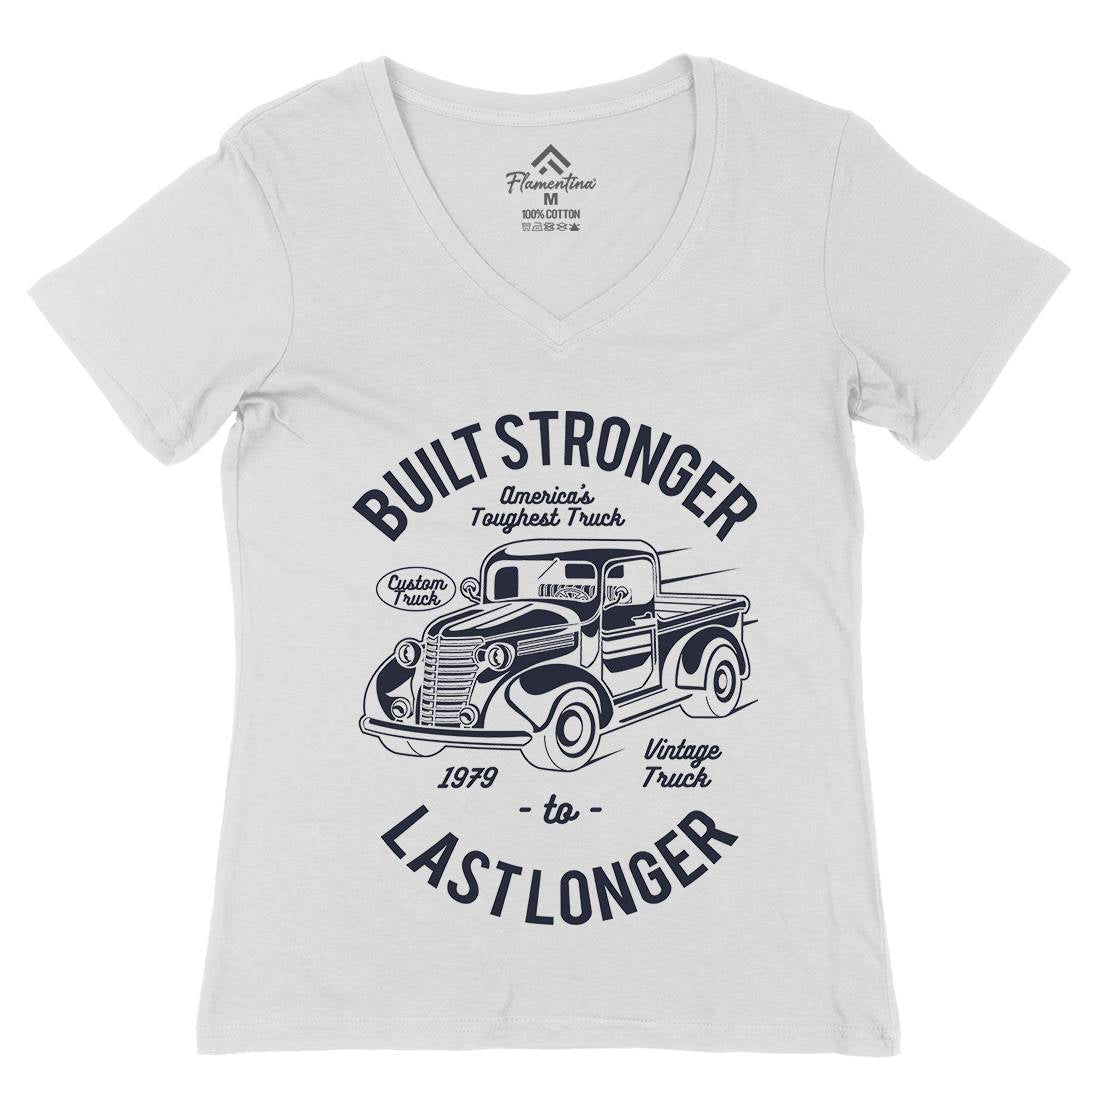 Built Stronger Womens Organic V-Neck T-Shirt Cars A023